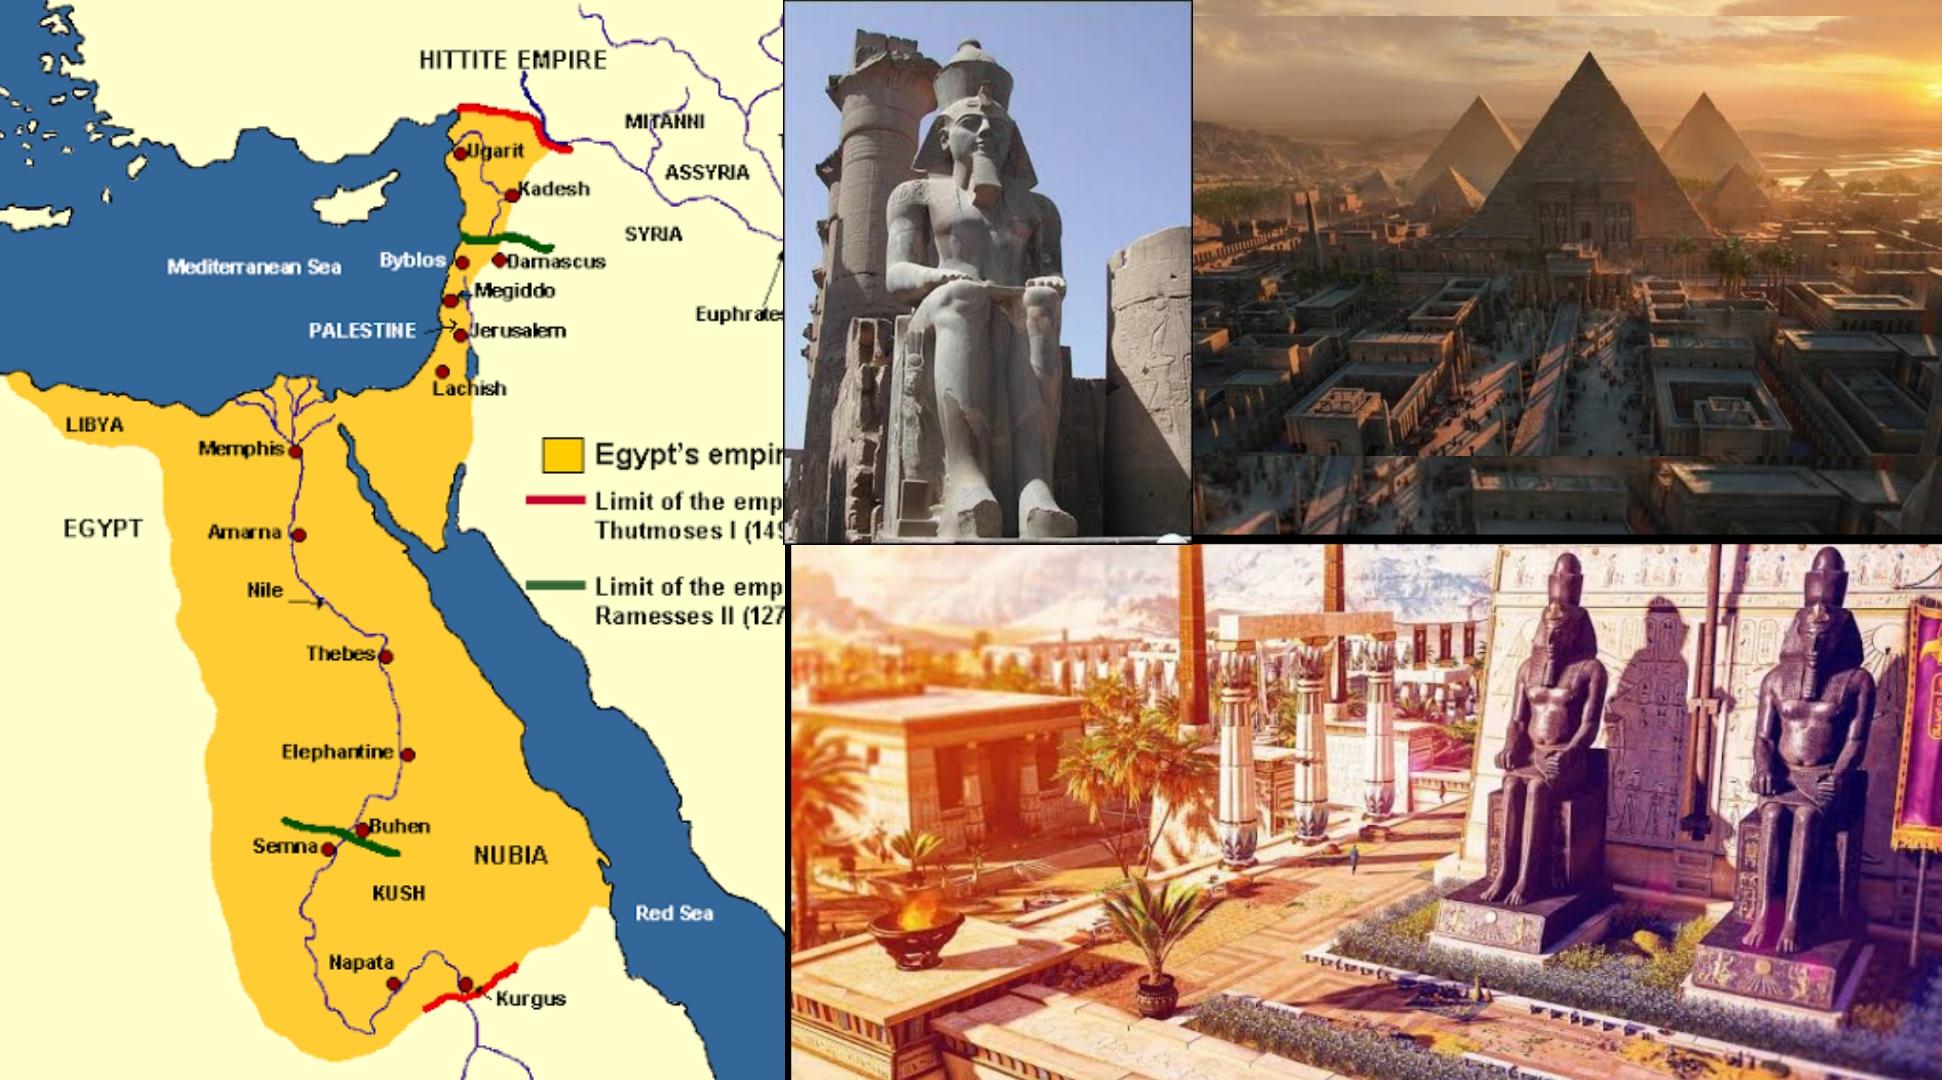 Egyptian Empire c. 1550 BC – c. 1077 BC